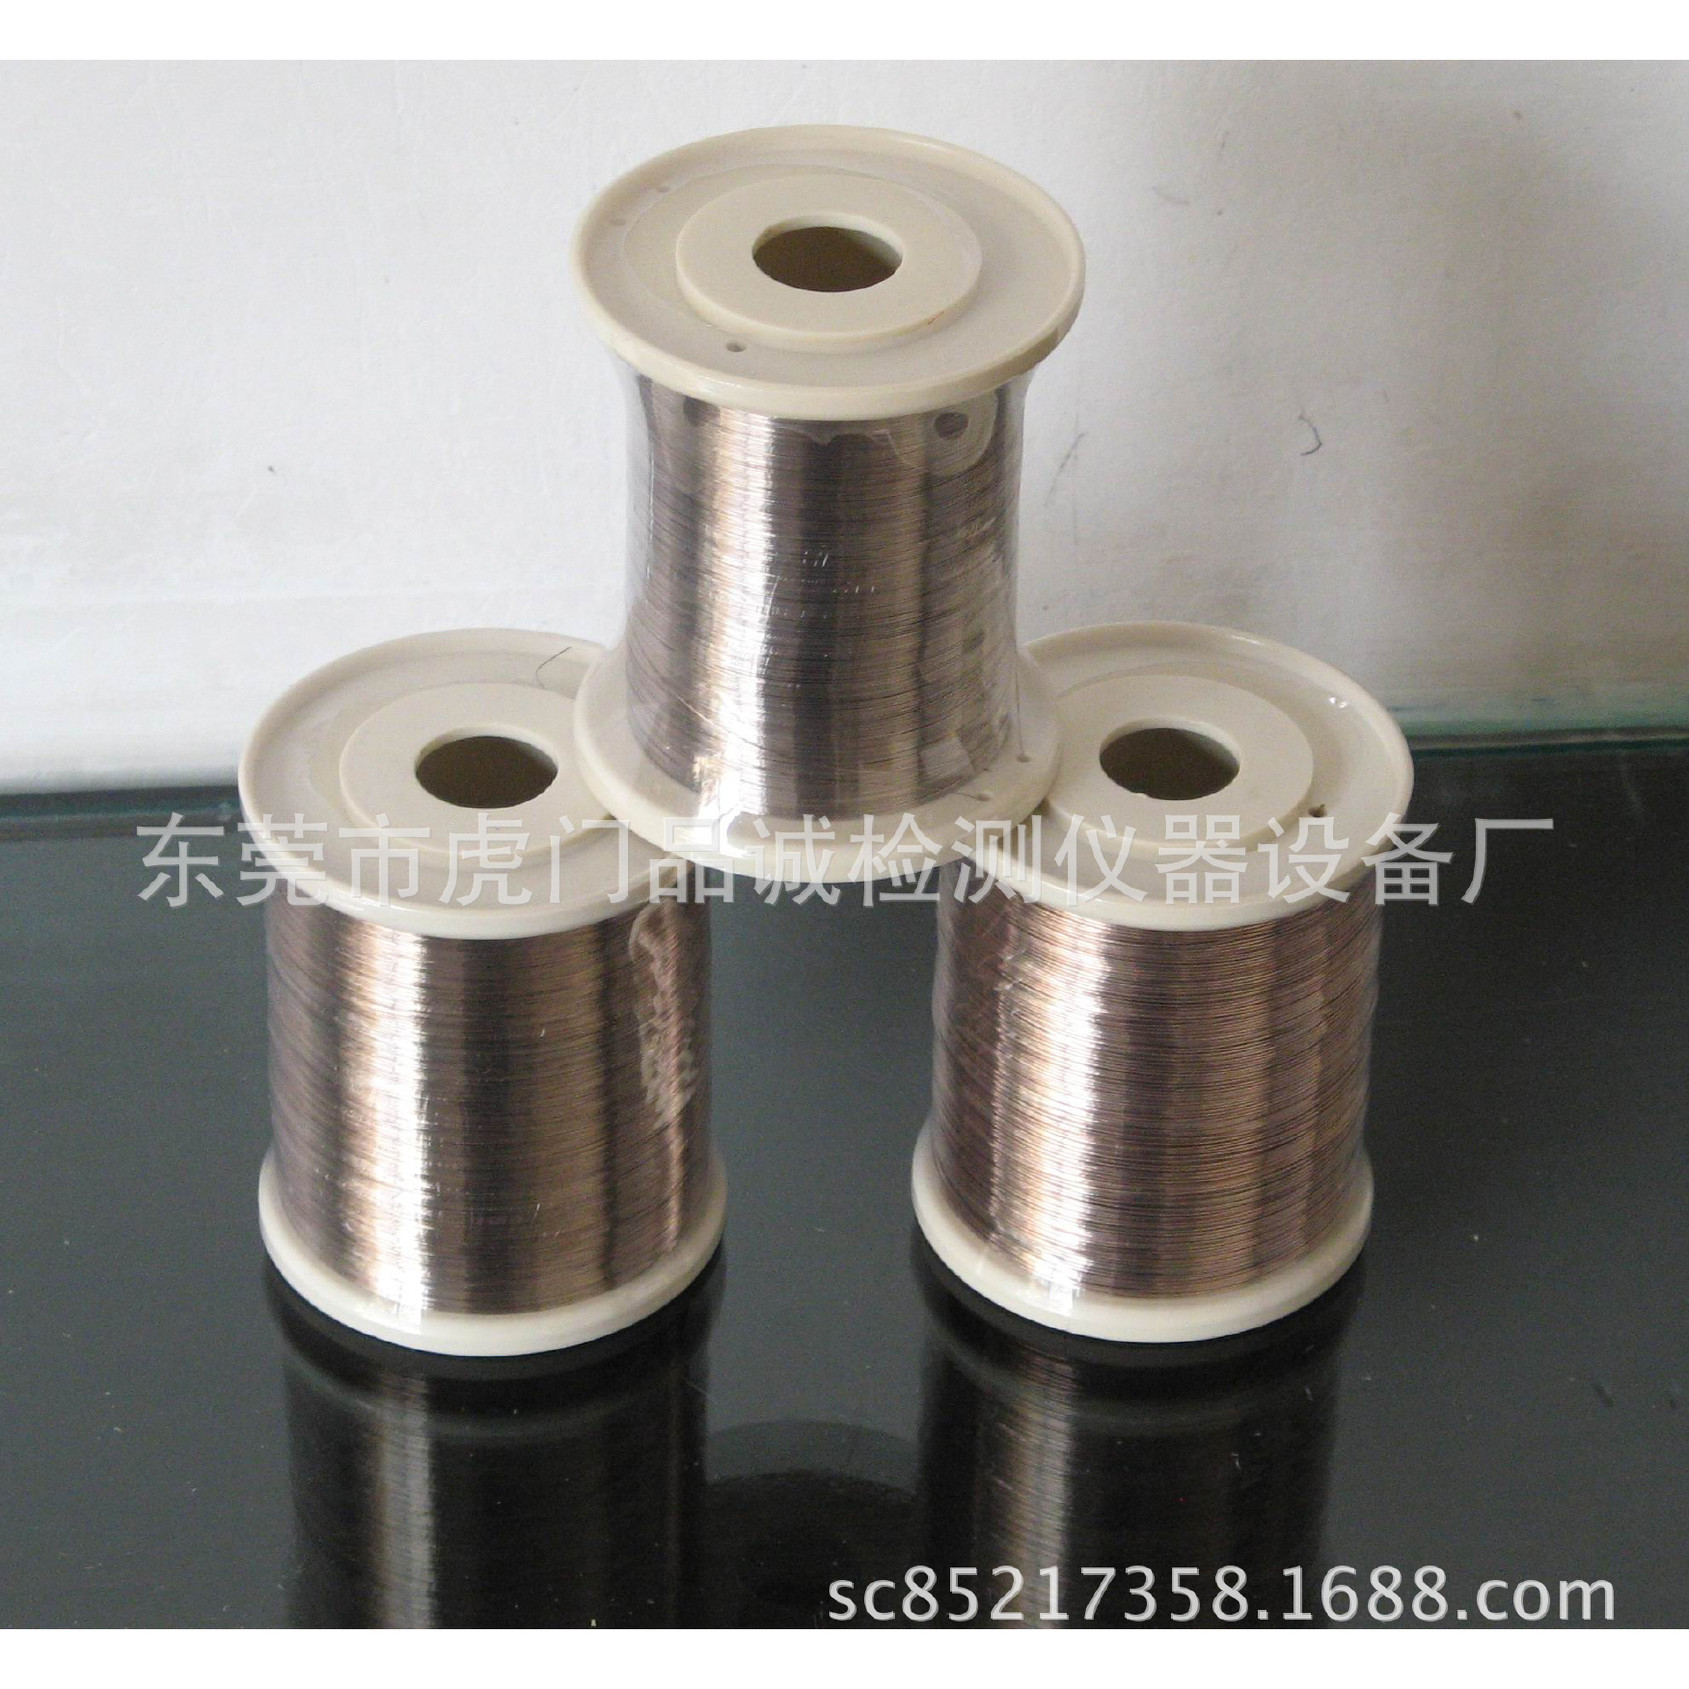 特价供银焊丝 银丝 铜线专用银焊丝 银丝 焊丝 0.2mm银焊丝示例图4